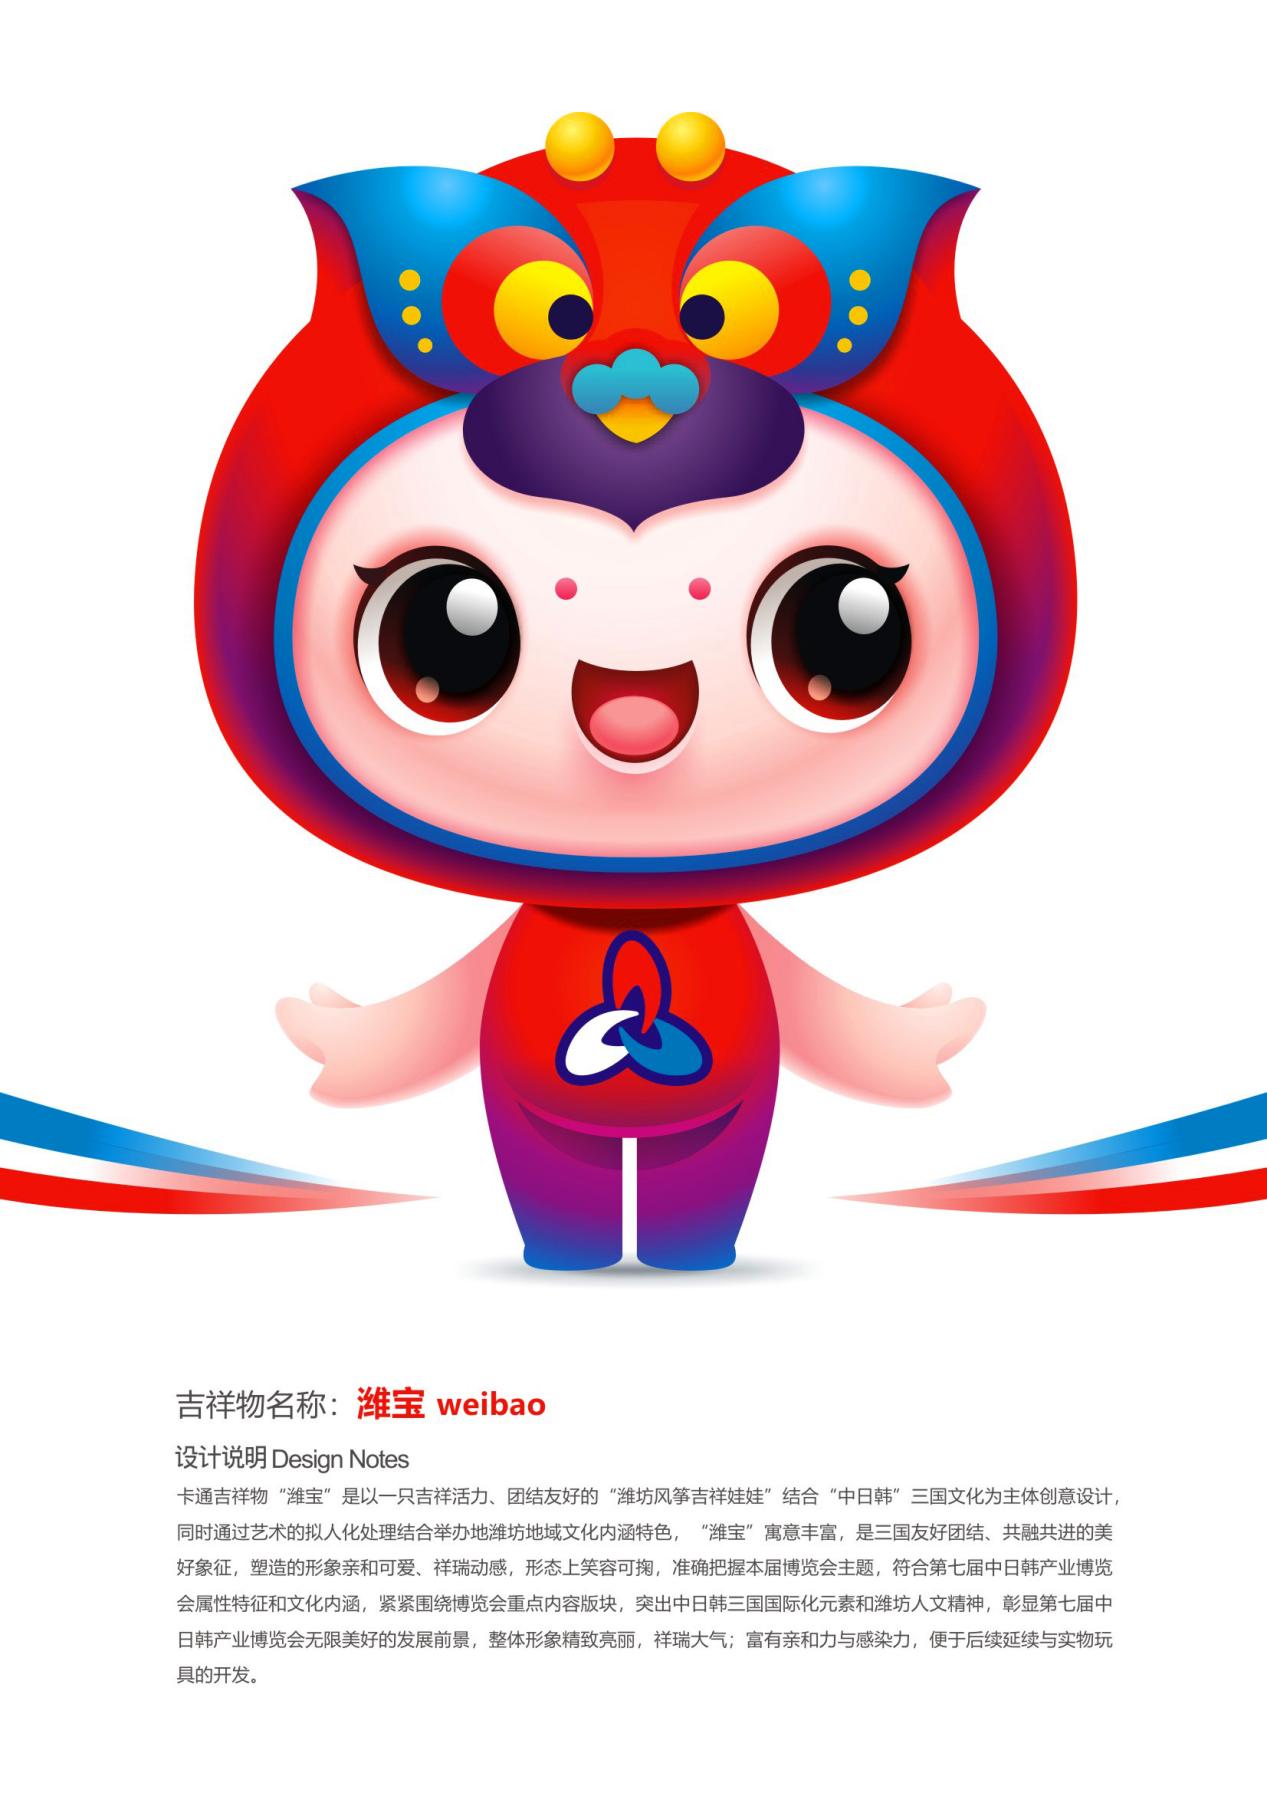 第七届中日韩产业博览会吉祥物征集获奖名单公示